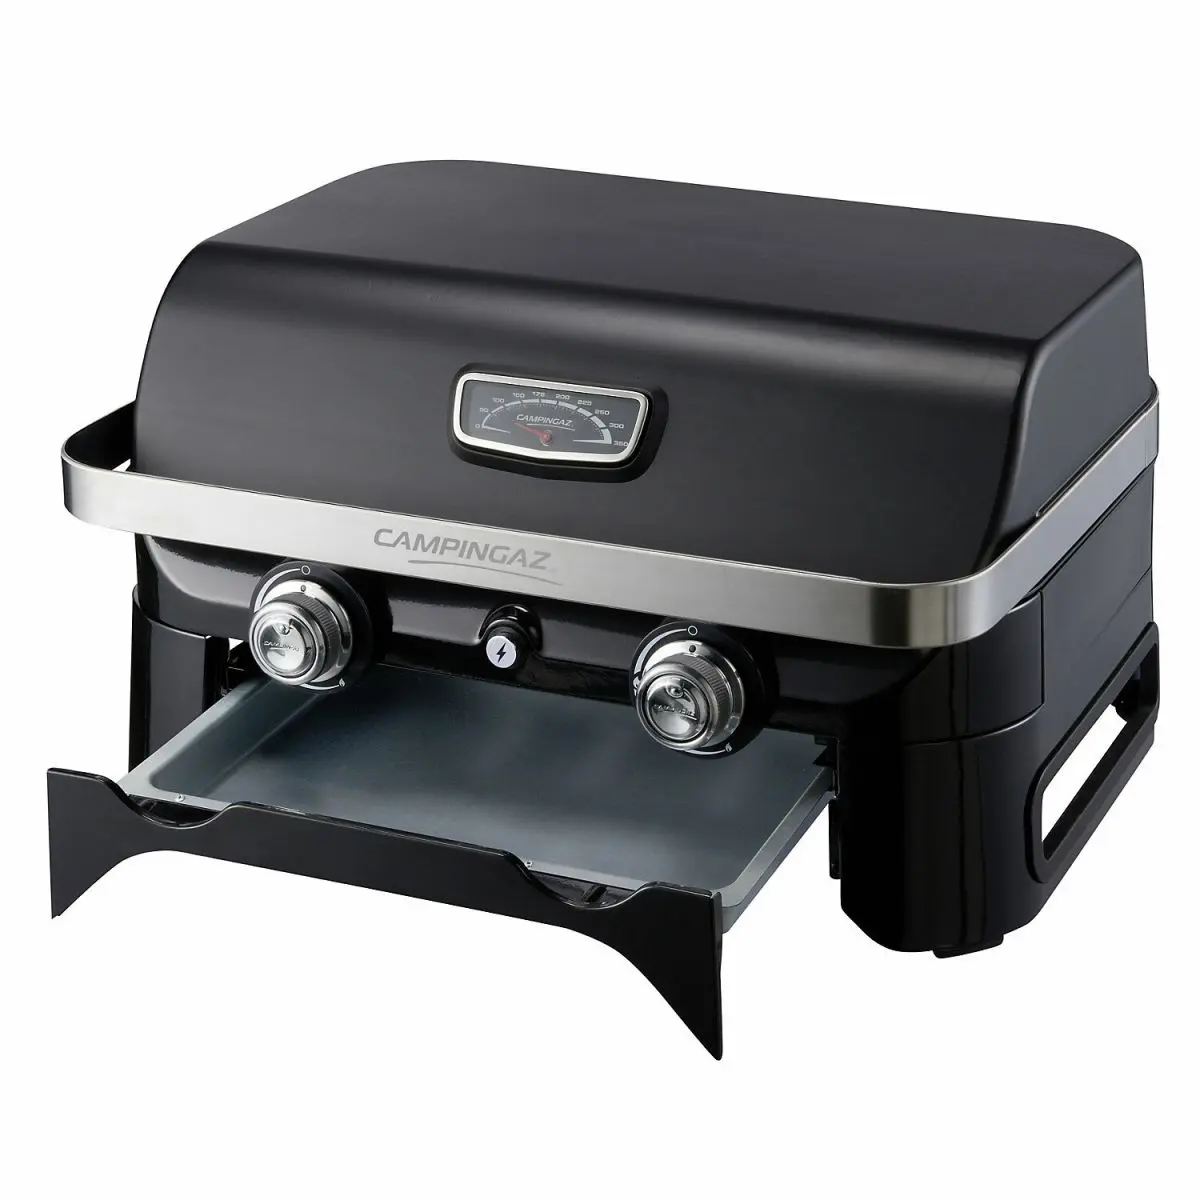 Asztali grill Attitude - 2100 LX